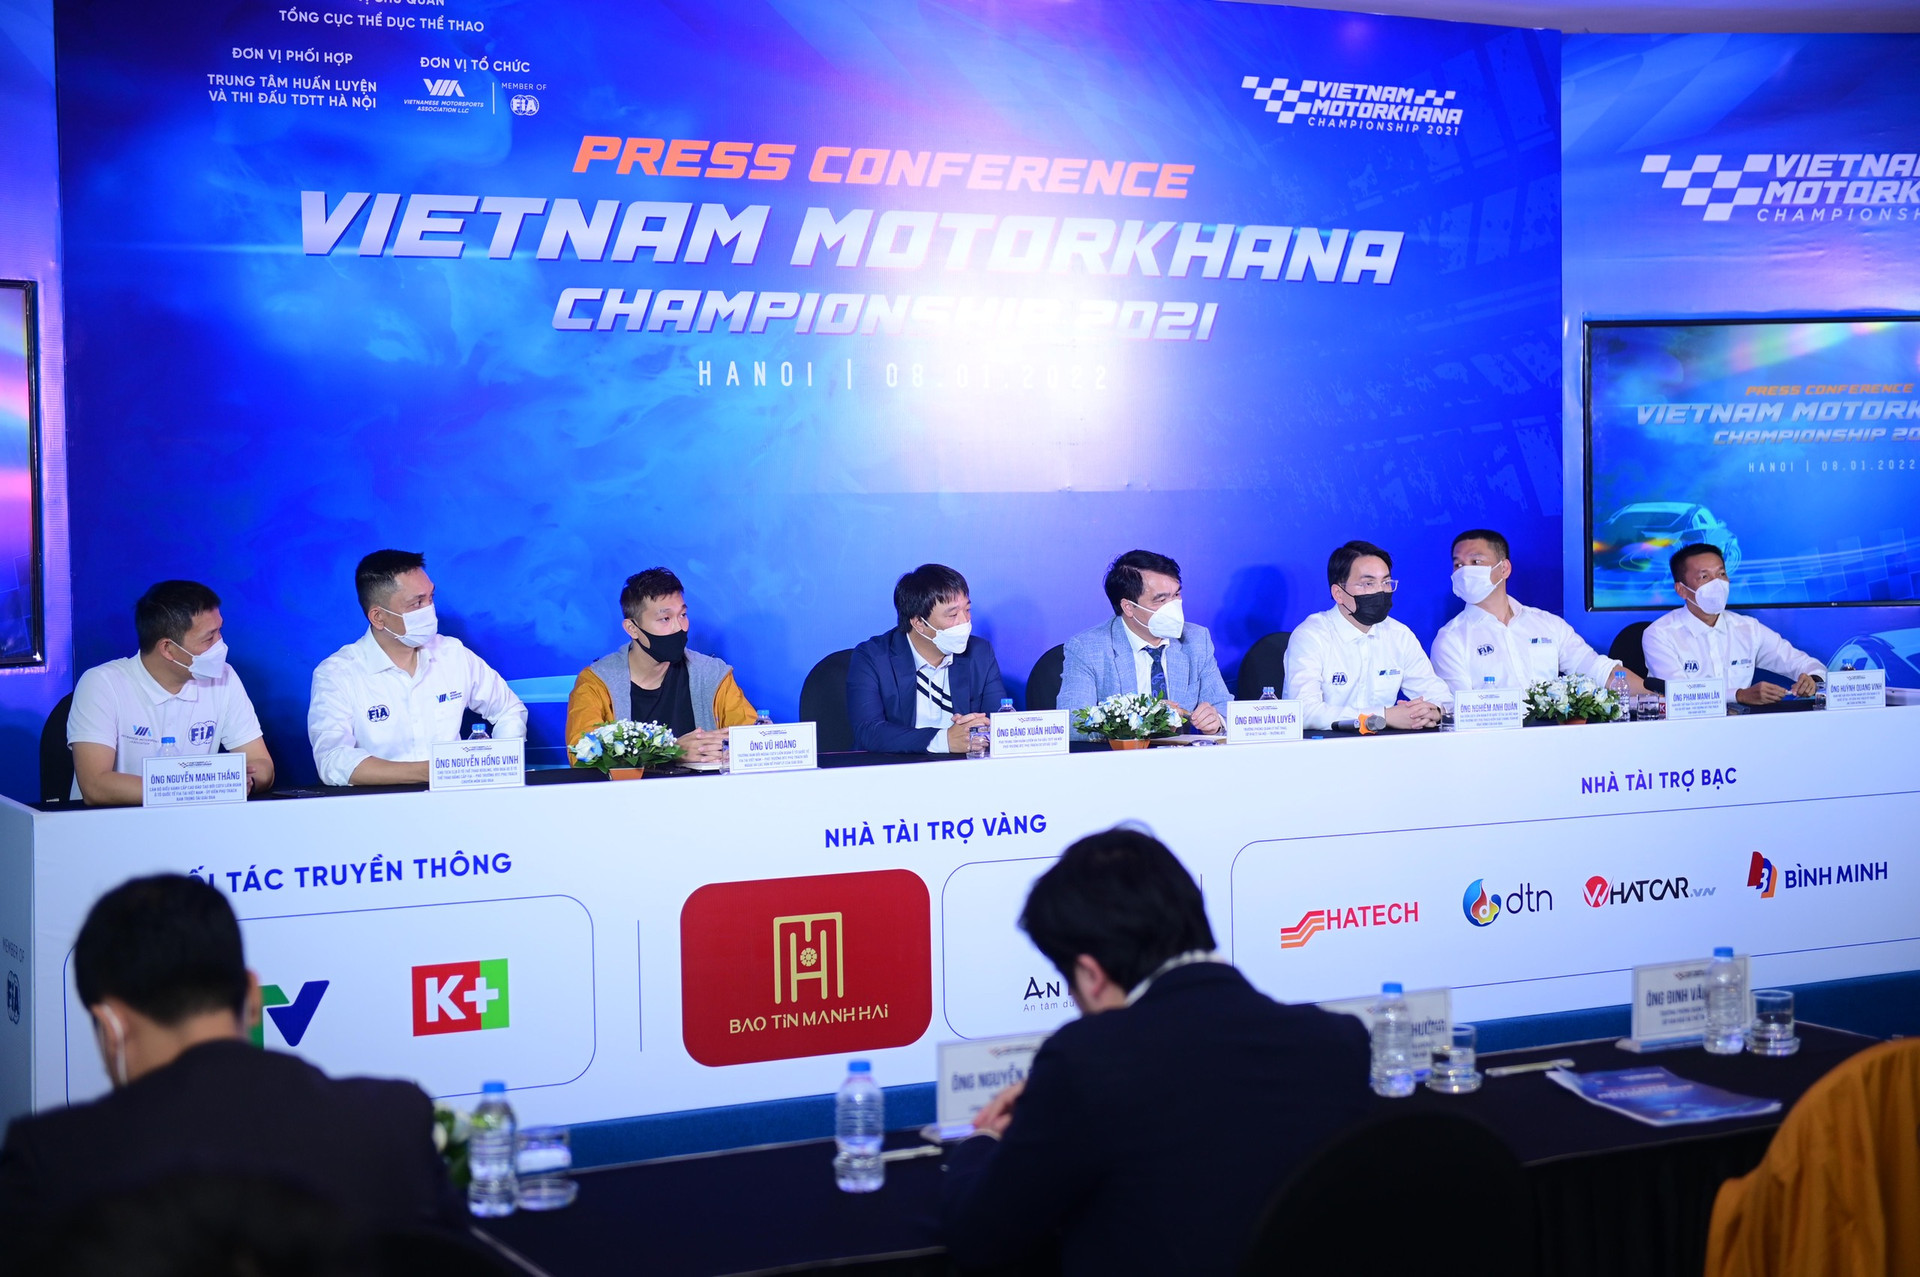 Toàn cảnh lễ ra mắt Giải Vô địch Motorkhana Việt Nam 2021